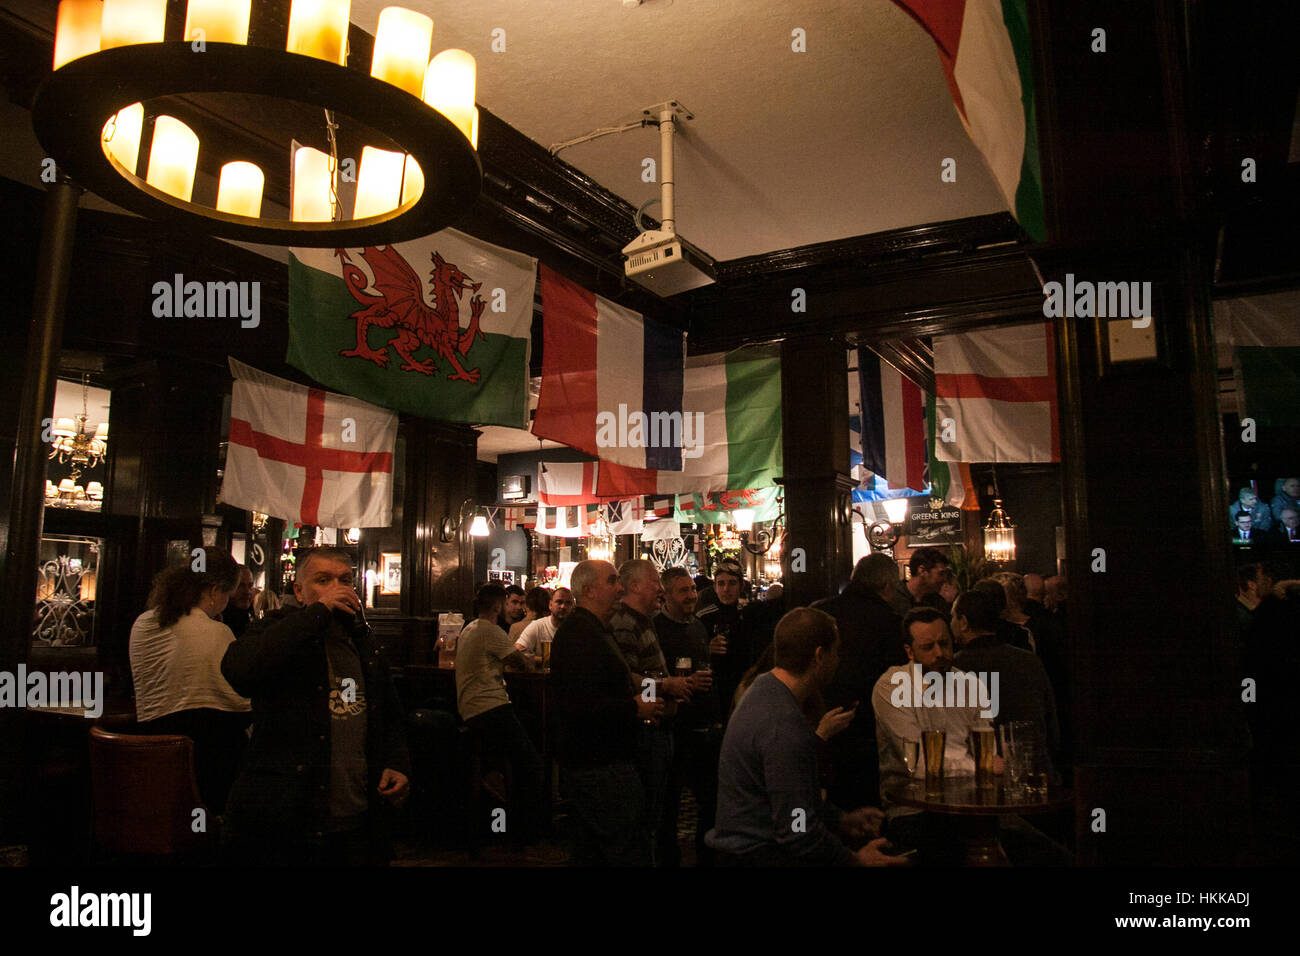 Wimbledon Londres, Royaume-Uni. 28 janvier, 2017. Un Pub à Wimbledon est décorée avec des drapeaux nationaux de rugby 6 nations avant le Tournoi RBS 6 Nations rugby union tournoi qui commence le 4 février Crédit : amer ghazzal/Alamy Live News Banque D'Images